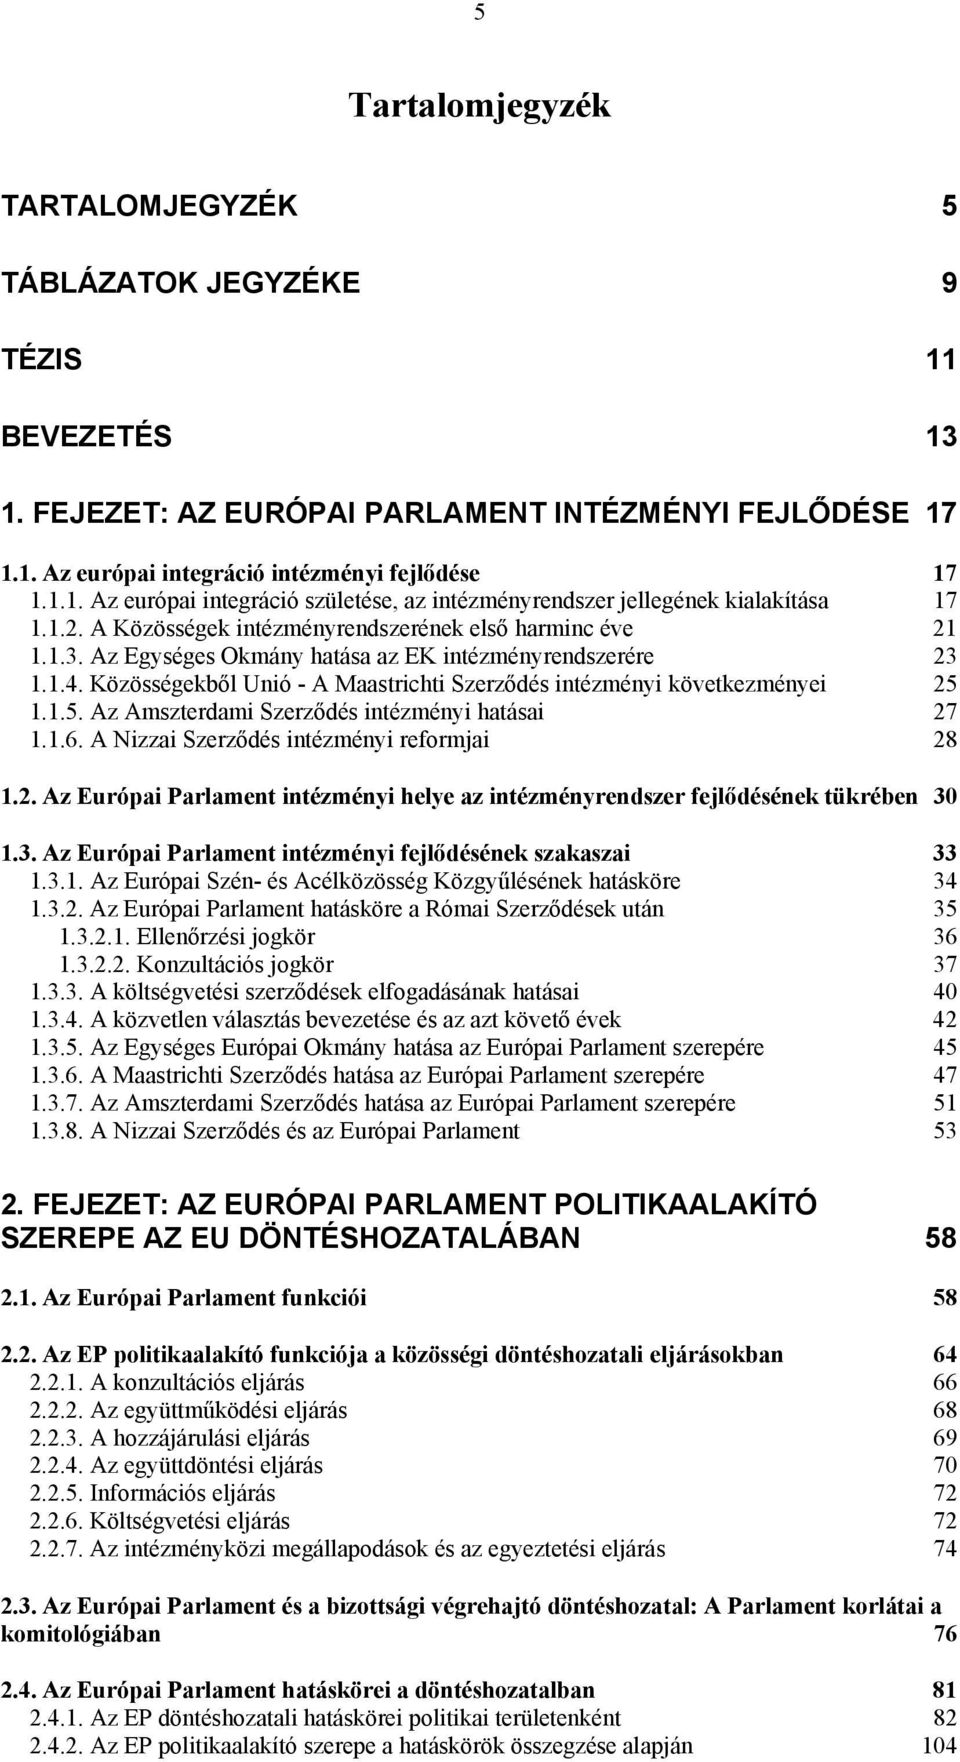 Közösségekből Unió - A Maastrichti Szerződés intézményi következményei 25 1.1.5. Az Amszterdami Szerződés intézményi hatásai 27 1.1.6. A Nizzai Szerződés intézményi reformjai 28 1.2. Az Európai Parlament intézményi helye az intézményrendszer fejlődésének tükrében 30 1.